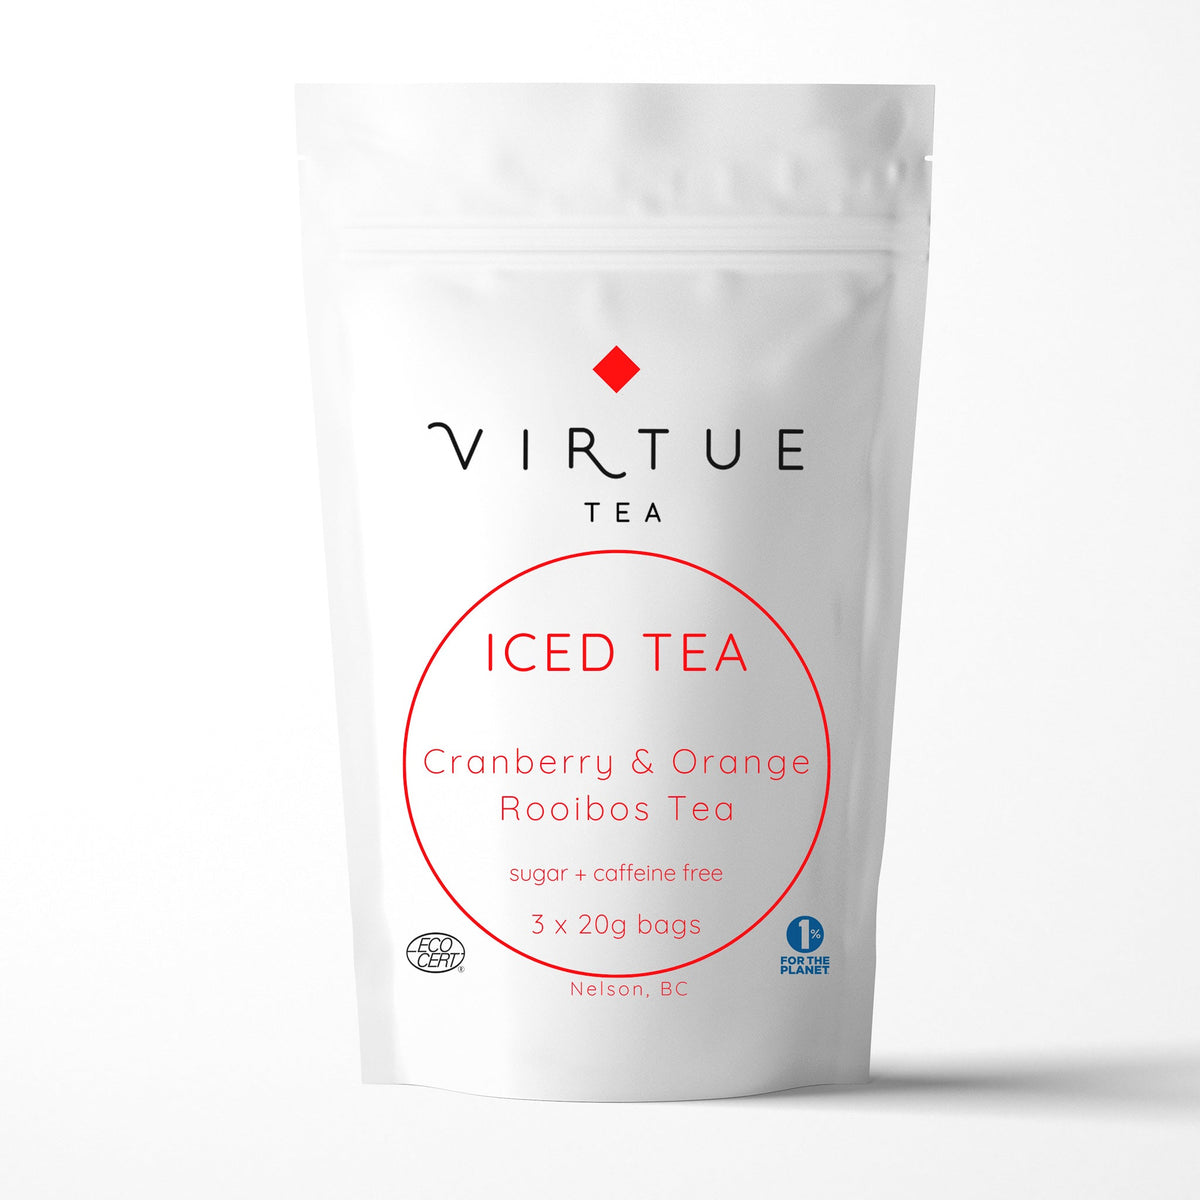 Iced Tea Cranberry Orange Rooibos Tea (3 x 20g) - VIRTUE Tea